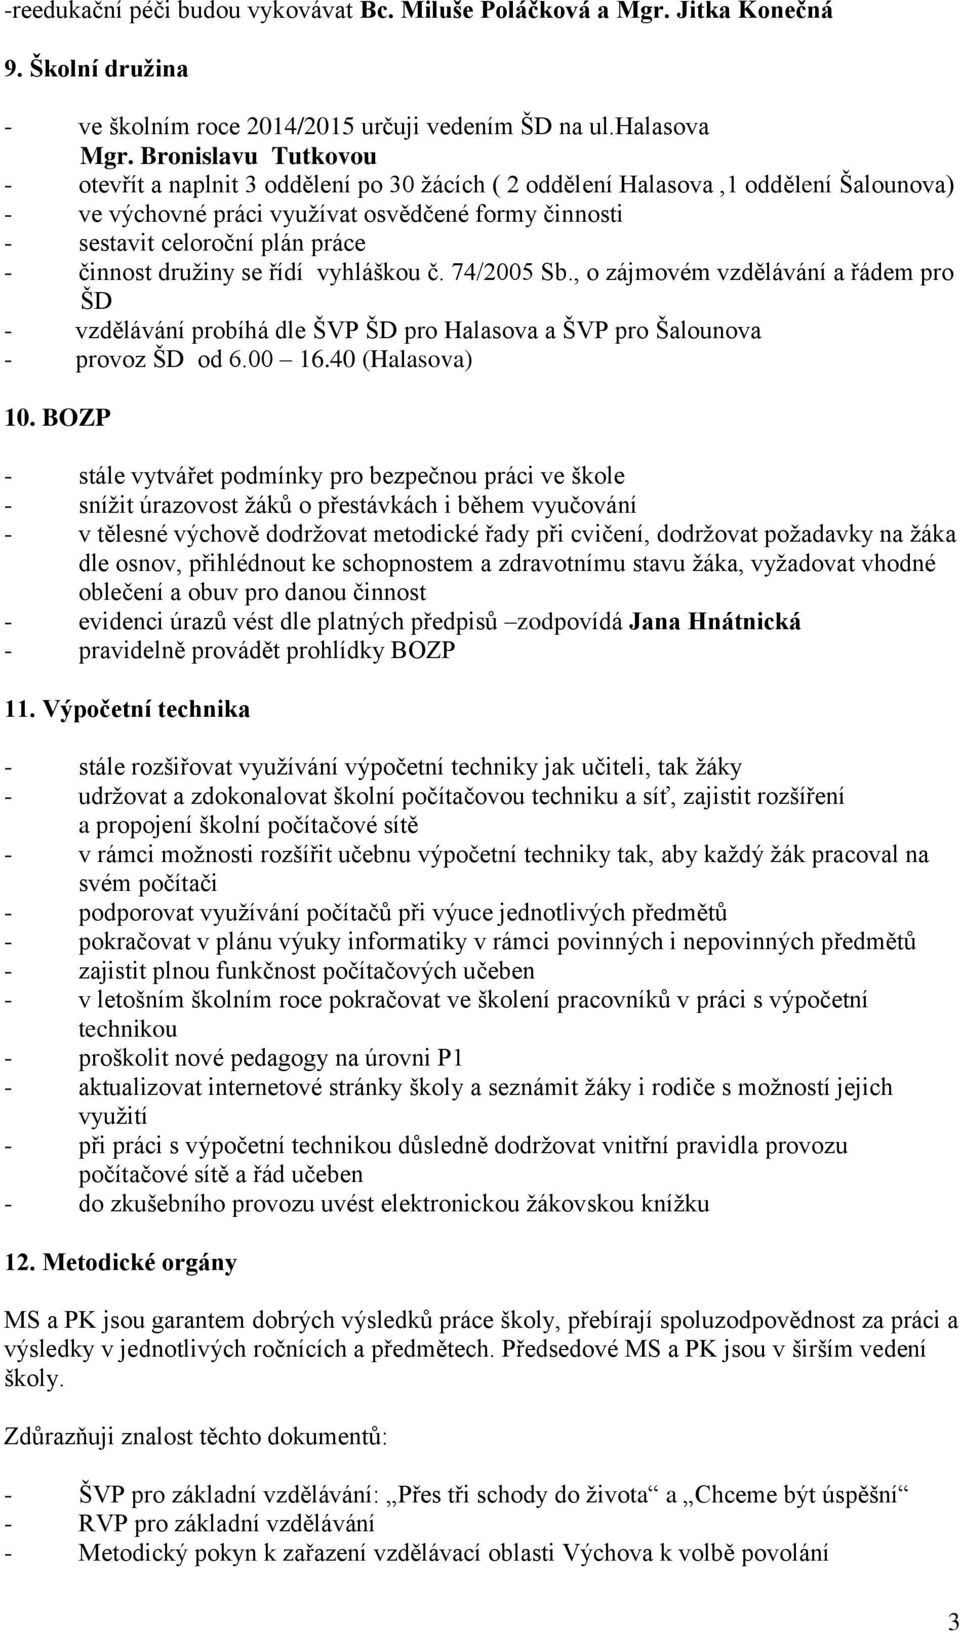 činnost družiny se řídí vyhláškou č. 74/2005 Sb., o zájmovém vzdělávání a řádem pro ŠD - vzdělávání probíhá dle ŠVP ŠD pro Halasova a ŠVP pro Šalounova - provoz ŠD od 6.00 16.40 (Halasova) 10.